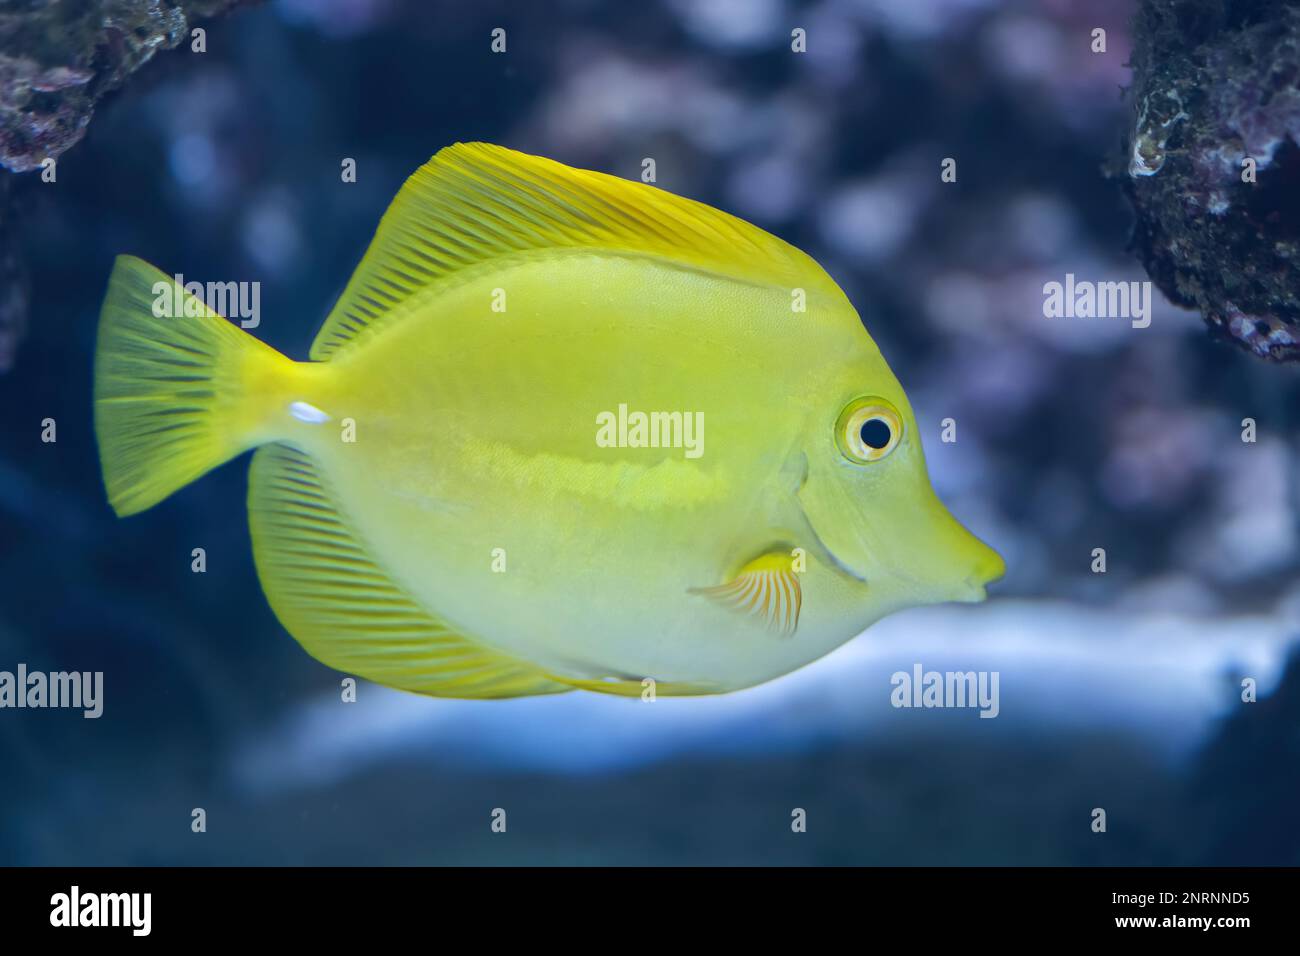 Les poissons d'eau salée du Tang jaune (Zebrasoma flavescens) de la famille des Acanthuridae. Banque D'Images